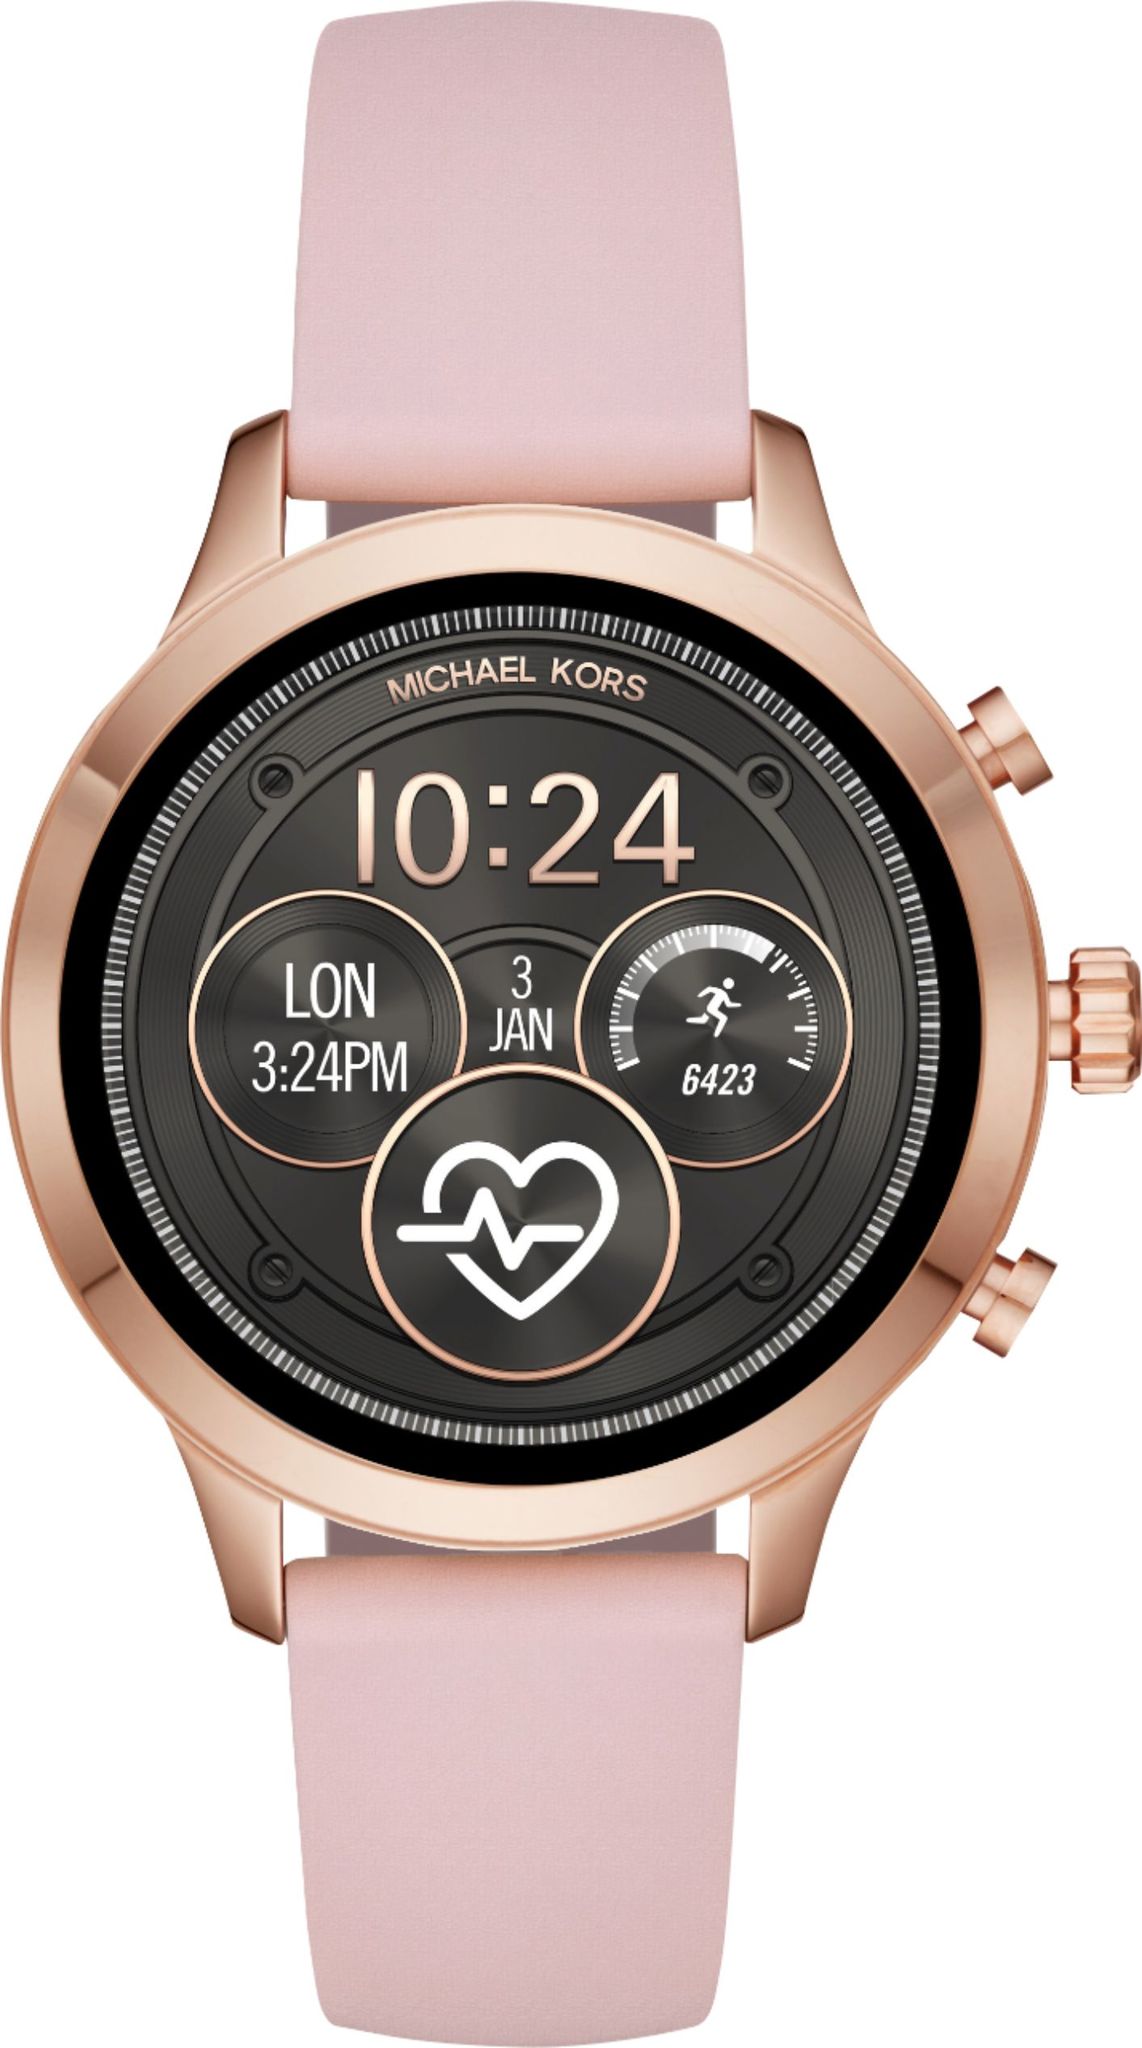 Дизайнерские умные часы Michael Kors Access Sofie 20 с платежным модулем  и другими возможностями